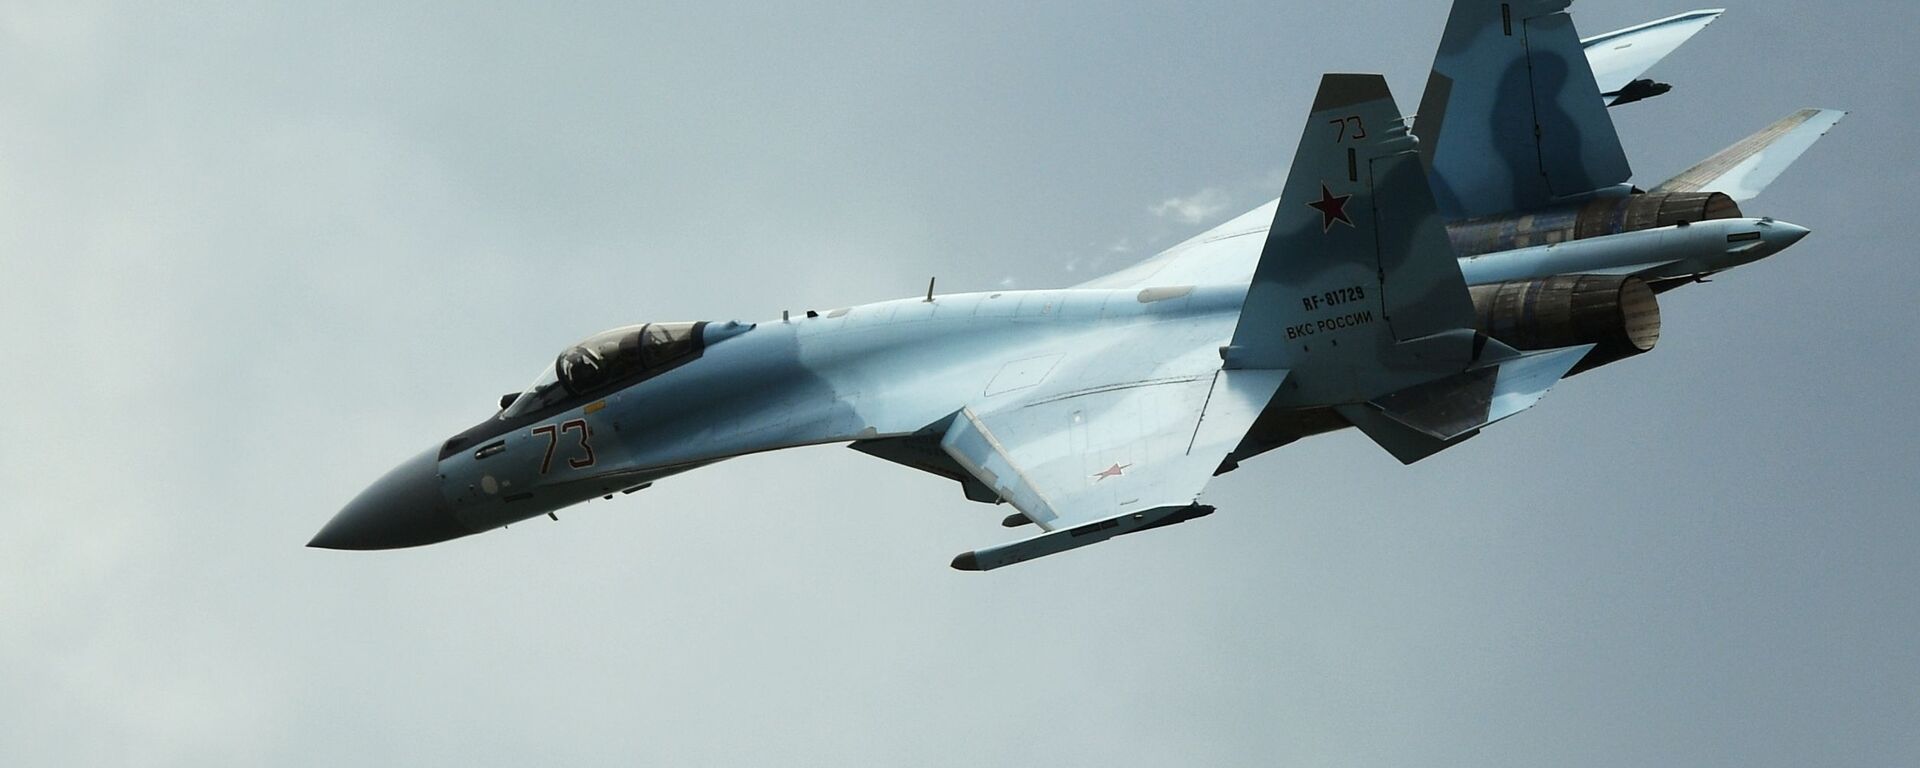 Máy bay Su-35S tại diễn đàn kỹ thuật quân sự quốc tế Army-2019. - Sputnik Việt Nam, 1920, 10.08.2021